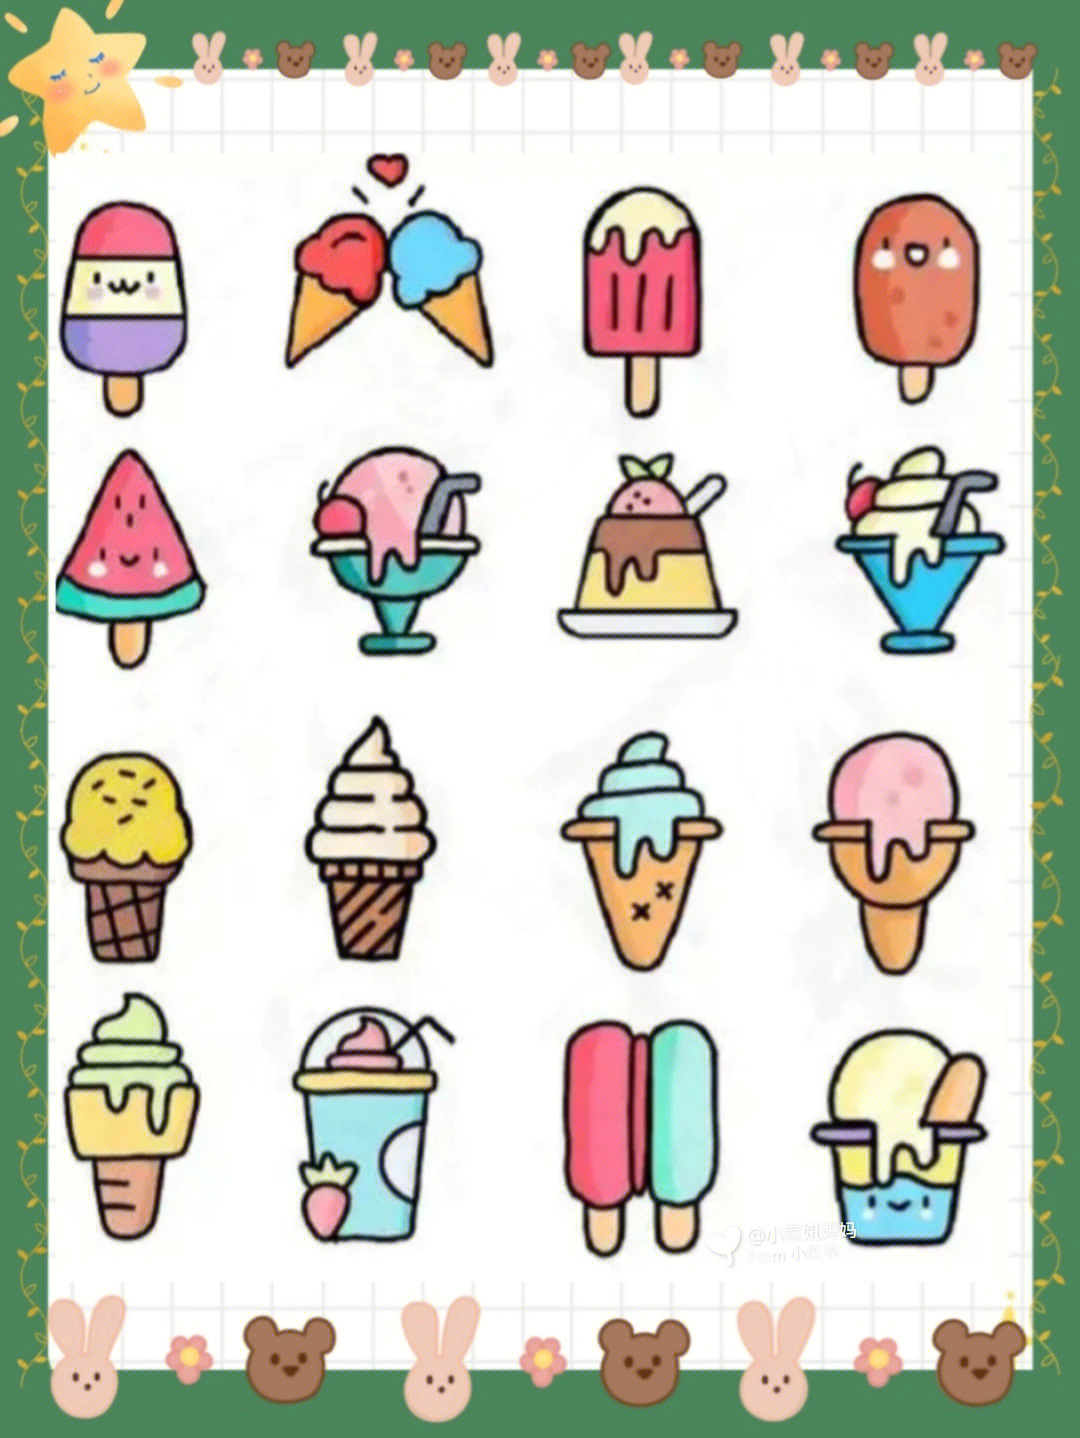 冰淇淋画画简笔画图片